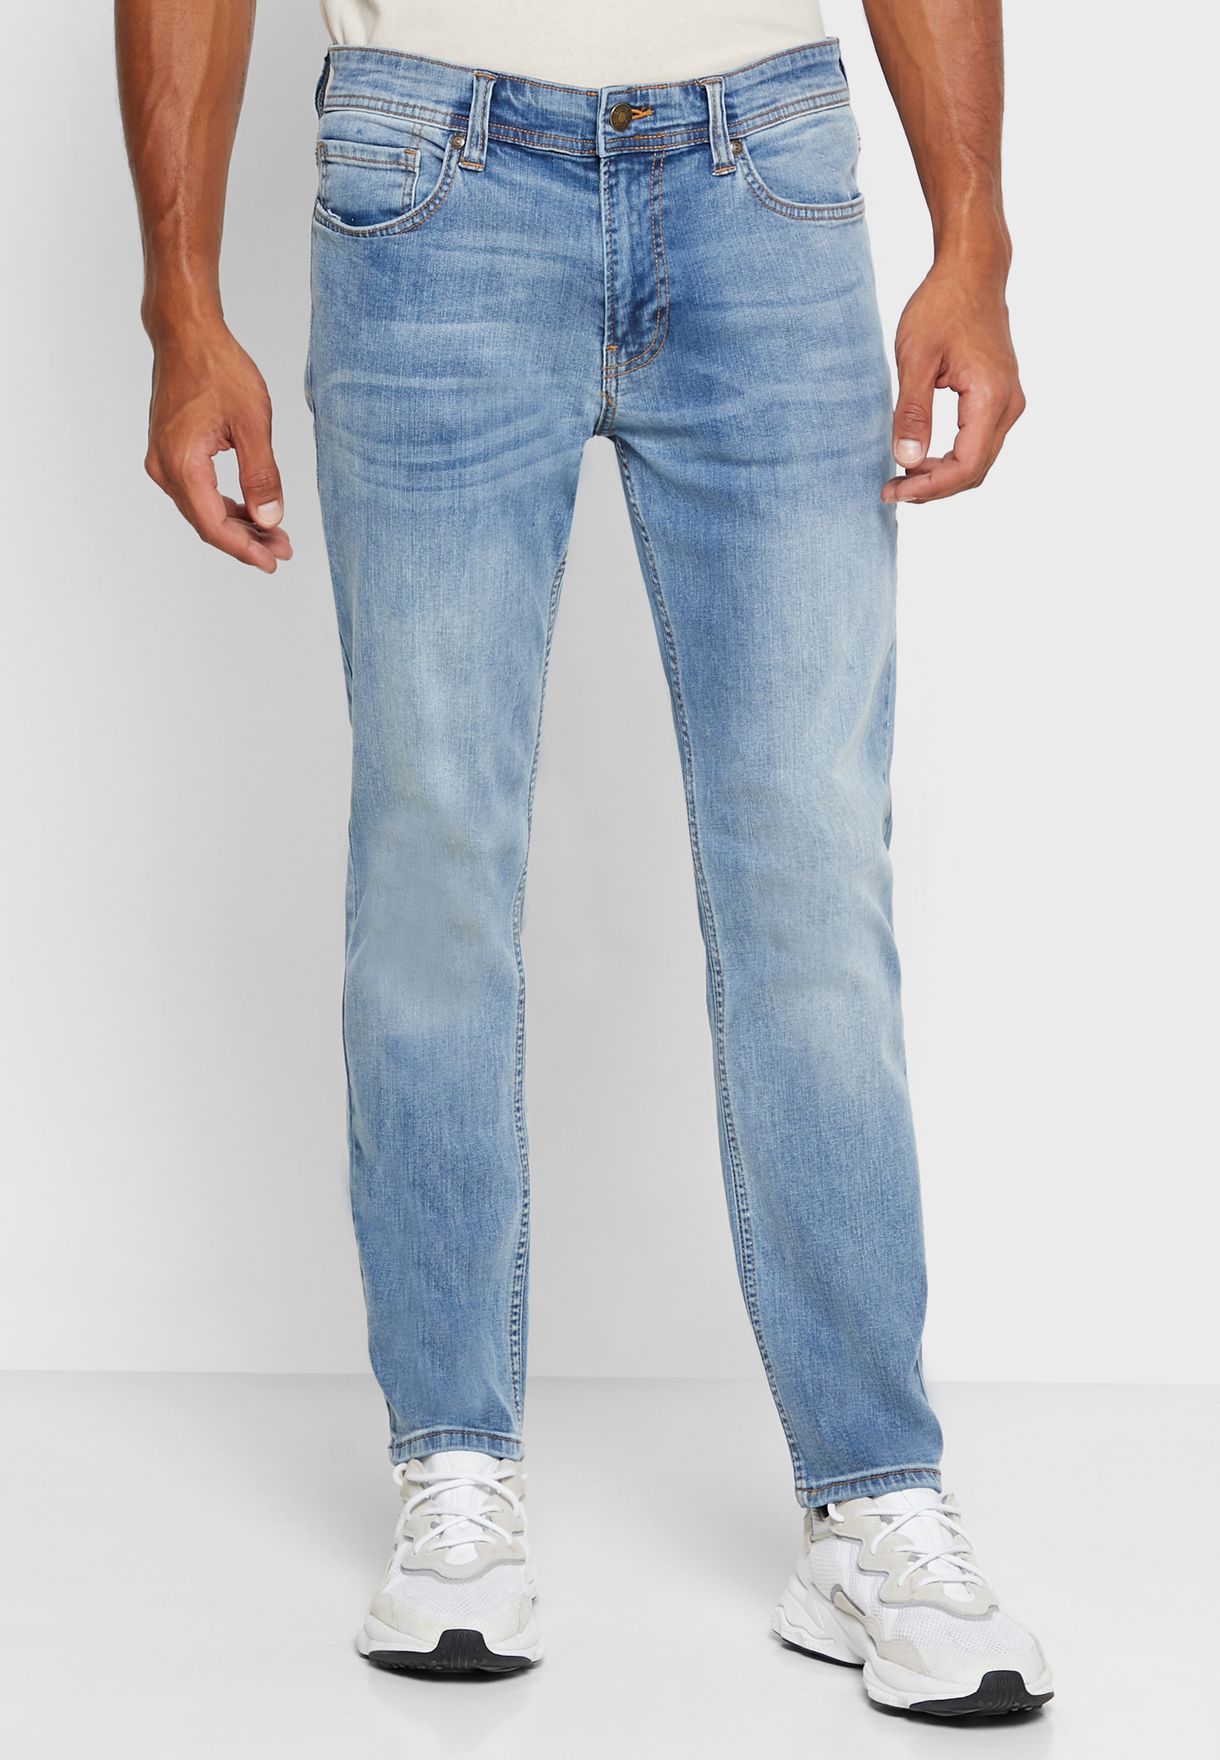 lee cooper skinny jeans mens